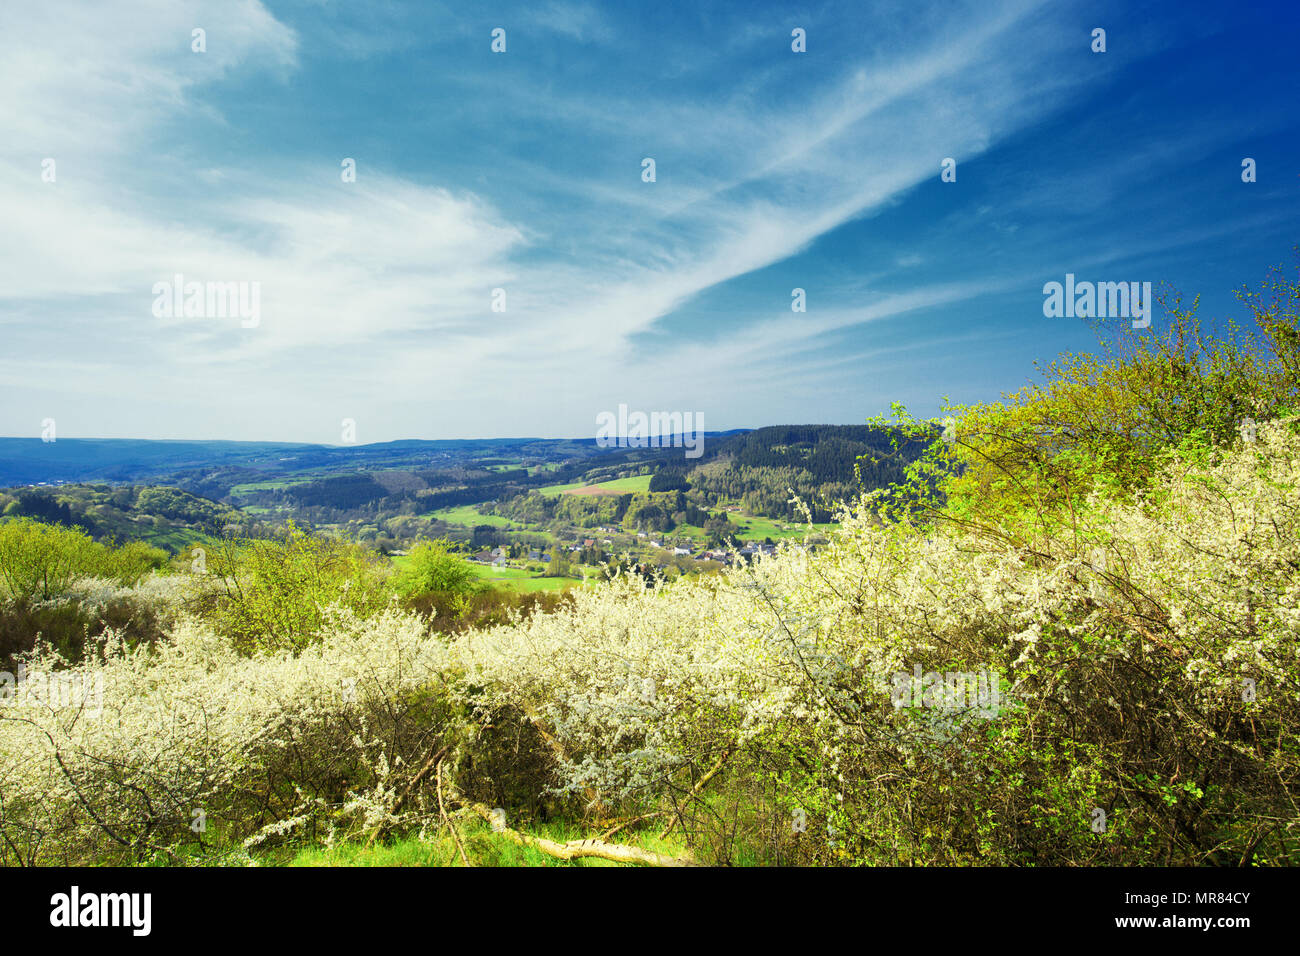 Paisaje de Eifel alemán en la primavera cerca de Roth y de Gerolstein con flores de endrinas, Prunus Spinoza, hierba verde fresca y vistas contra el cielo con nubes Foto de stock